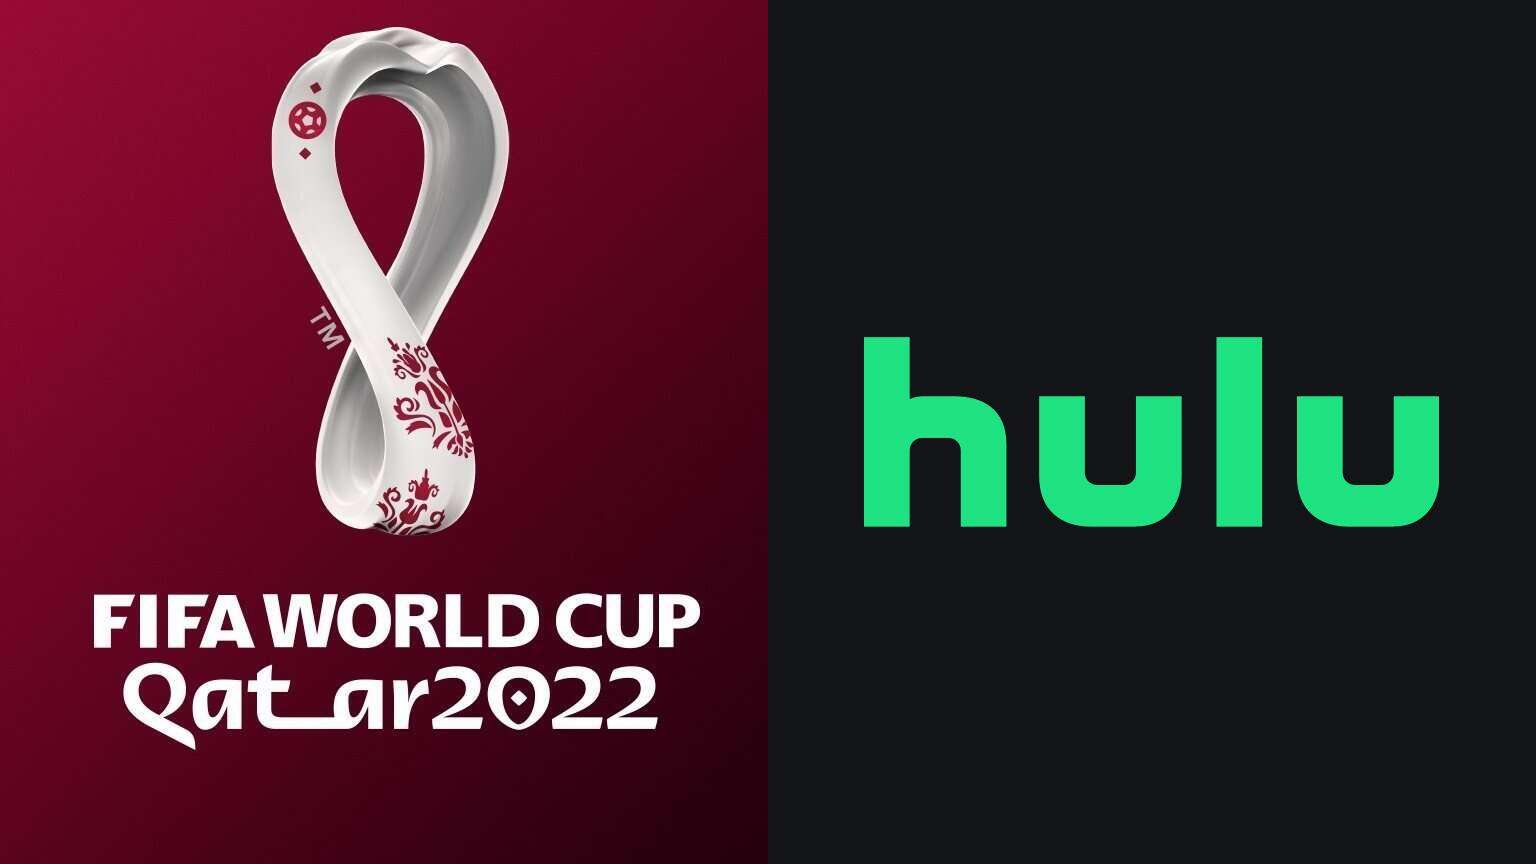 fifa world cup logo hulu live tv